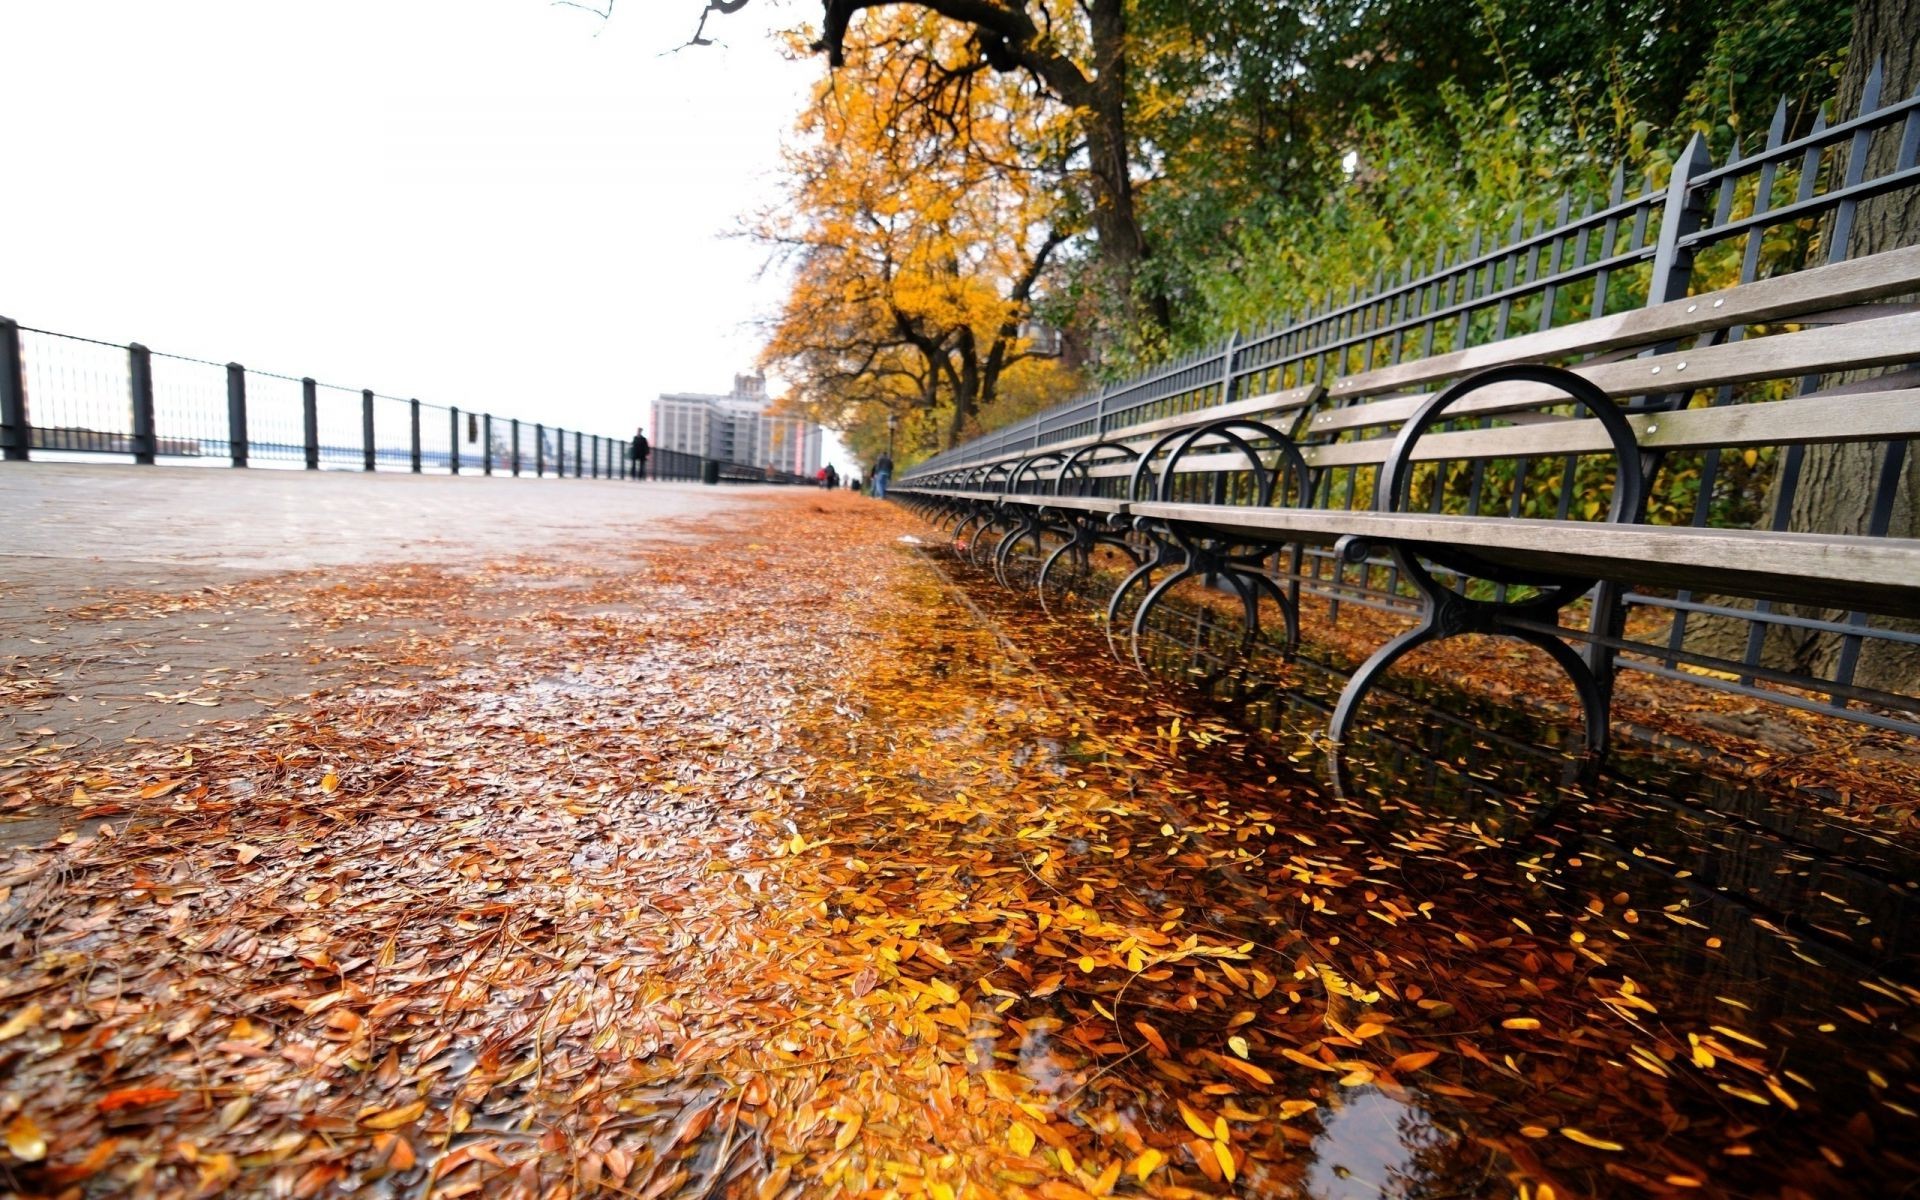 осень осень природа древесины сезон дорога лист дерево руководство парк мост пейзаж на открытом воздухе воды цвет среды путешествия свет живописный